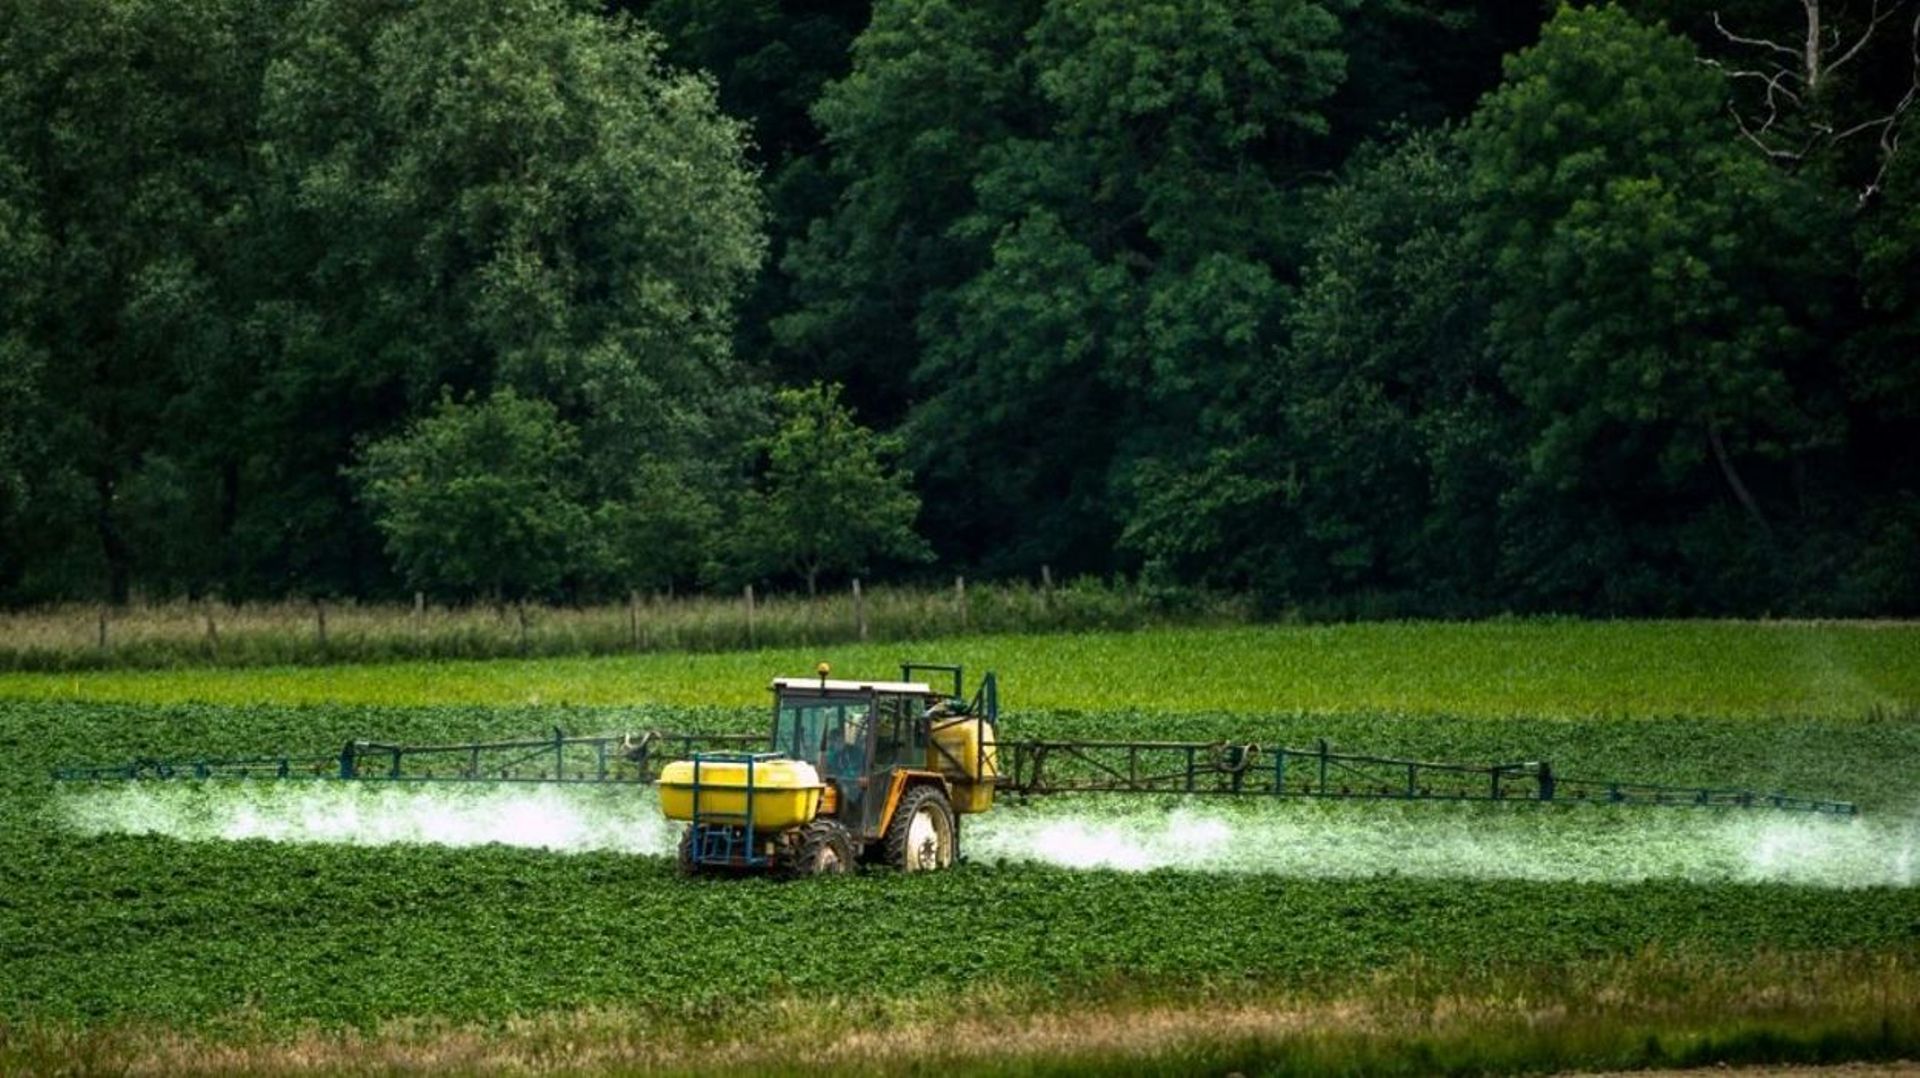 Une vaste étude a été réalisée sur l'exposition aux pesticides des personnes qui habitent à la campagne. L'objectif était de mesurer les niveaux de pollution juste après les pulvérisations dans les champs.